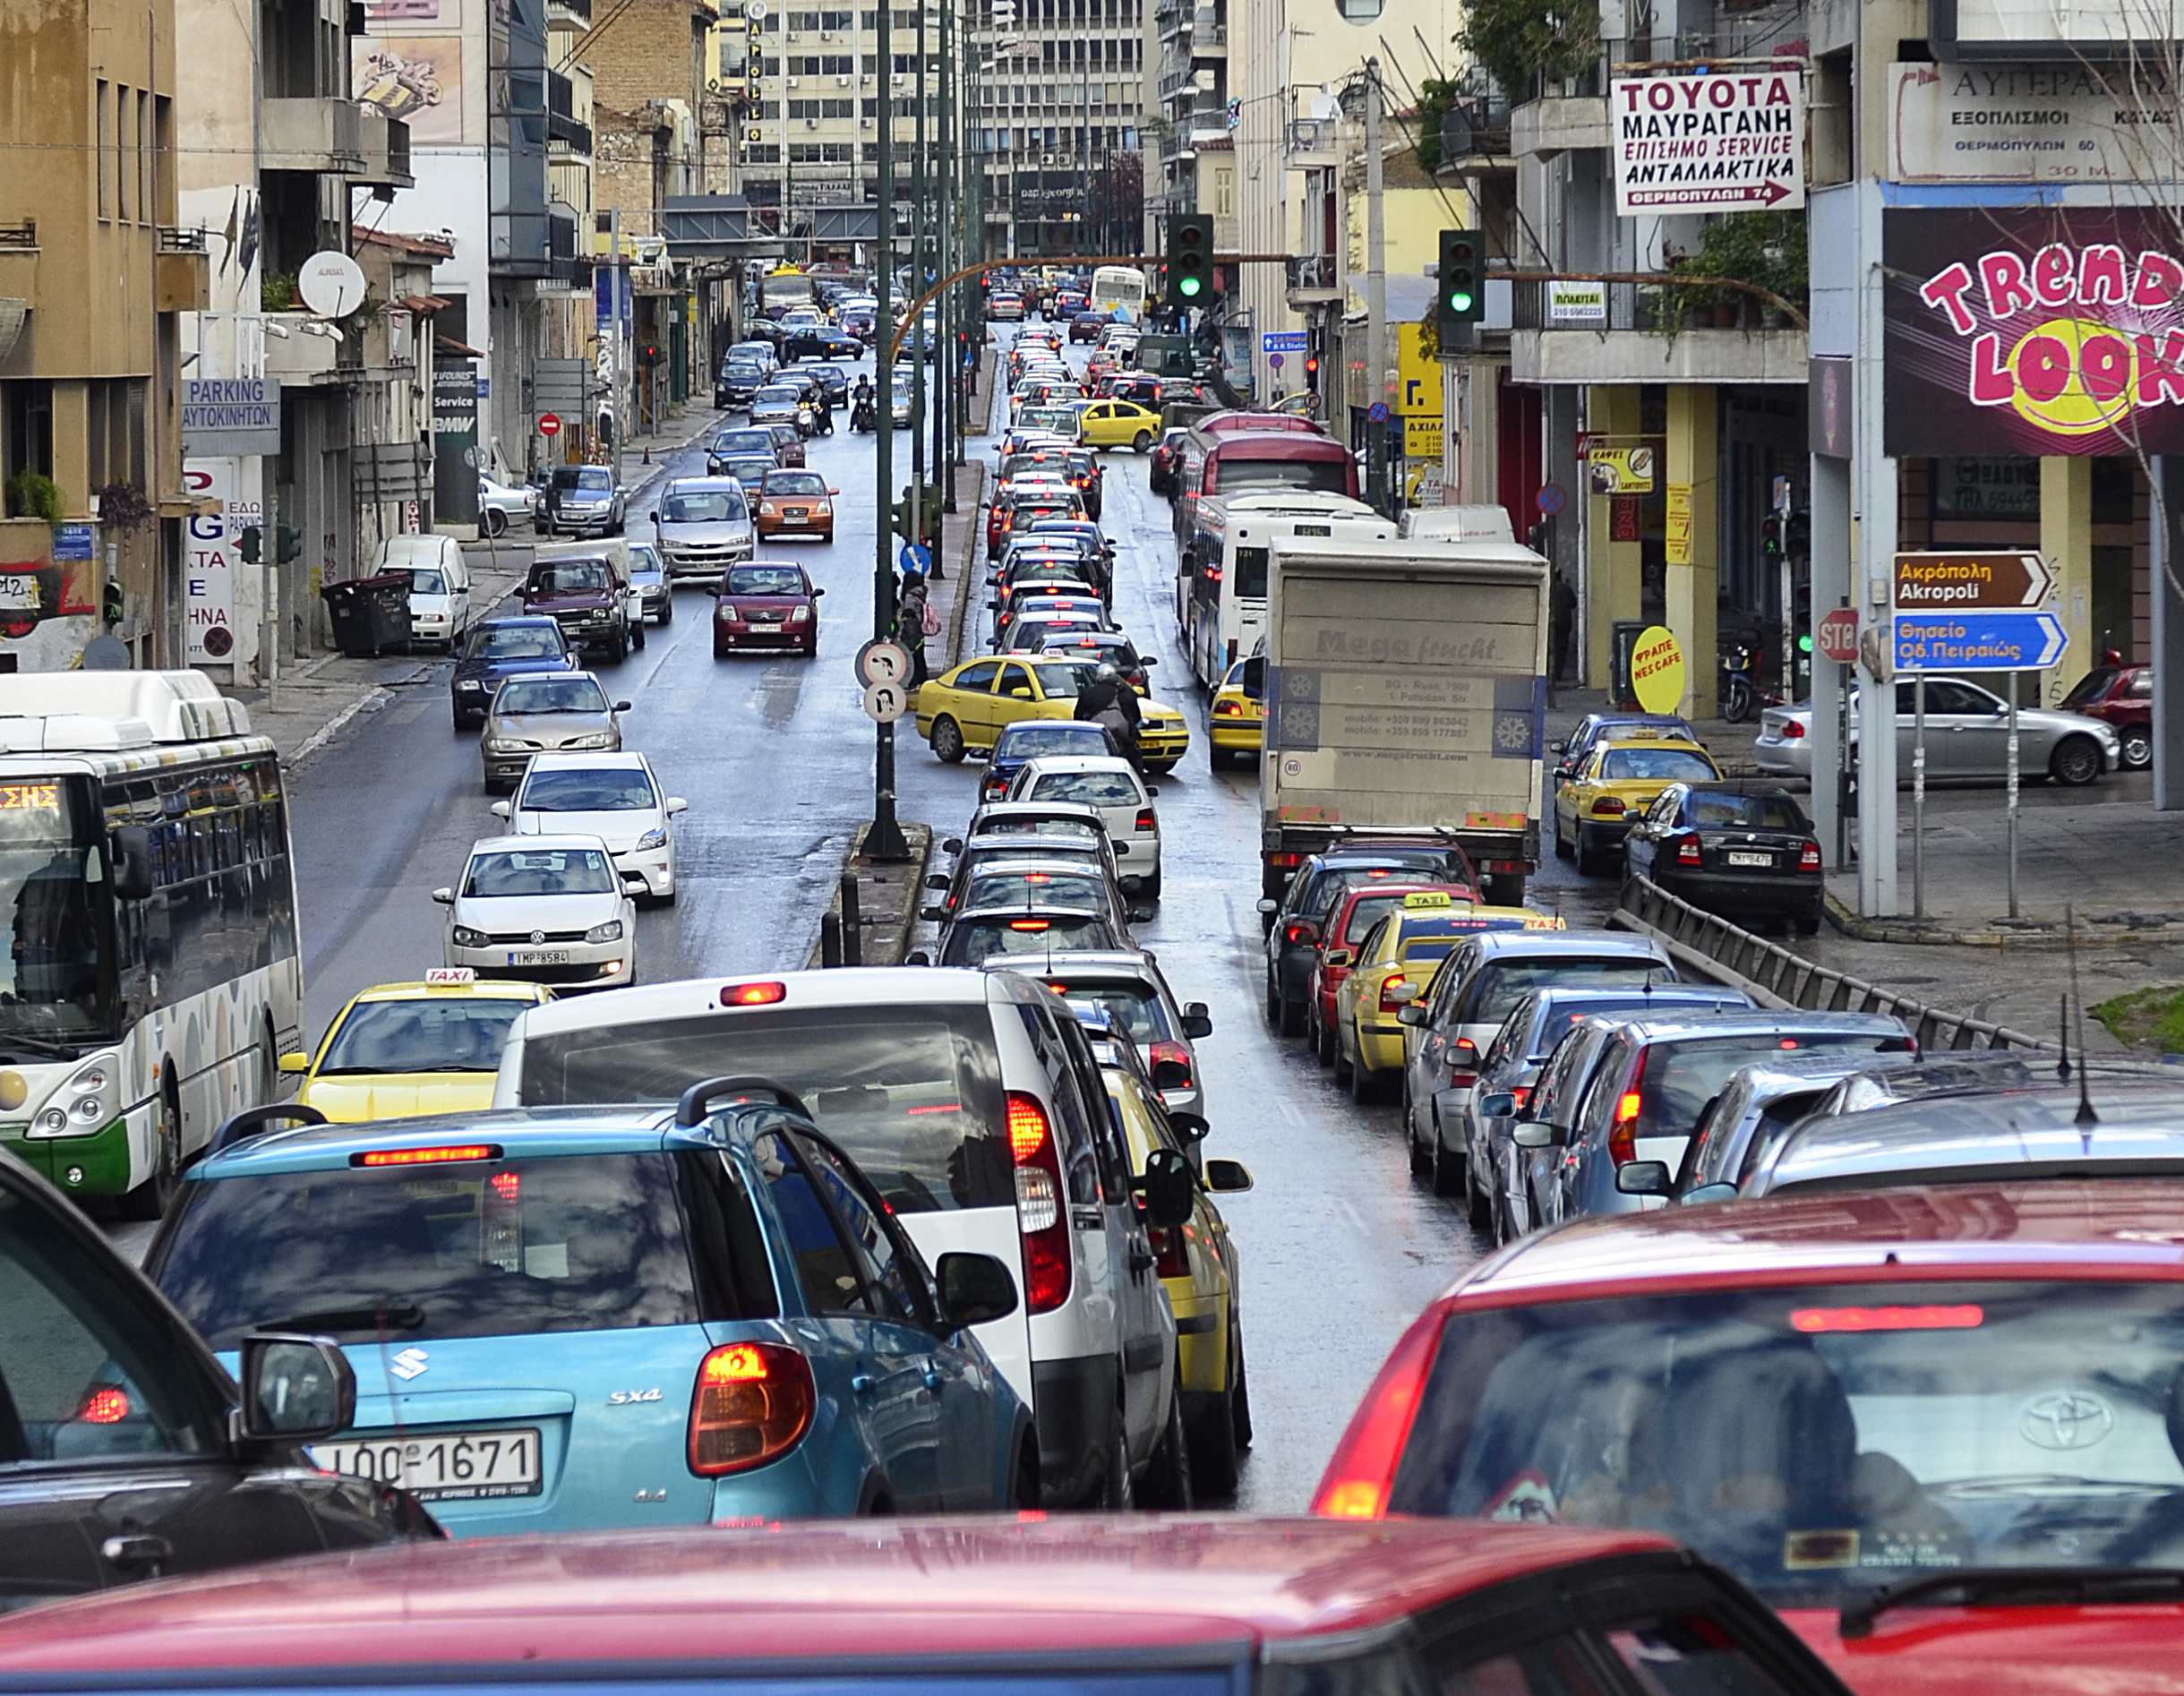 Παρατείνεται το μέτρο της απόσυρσης αυτοκινήτων έως το τέλος του 2015